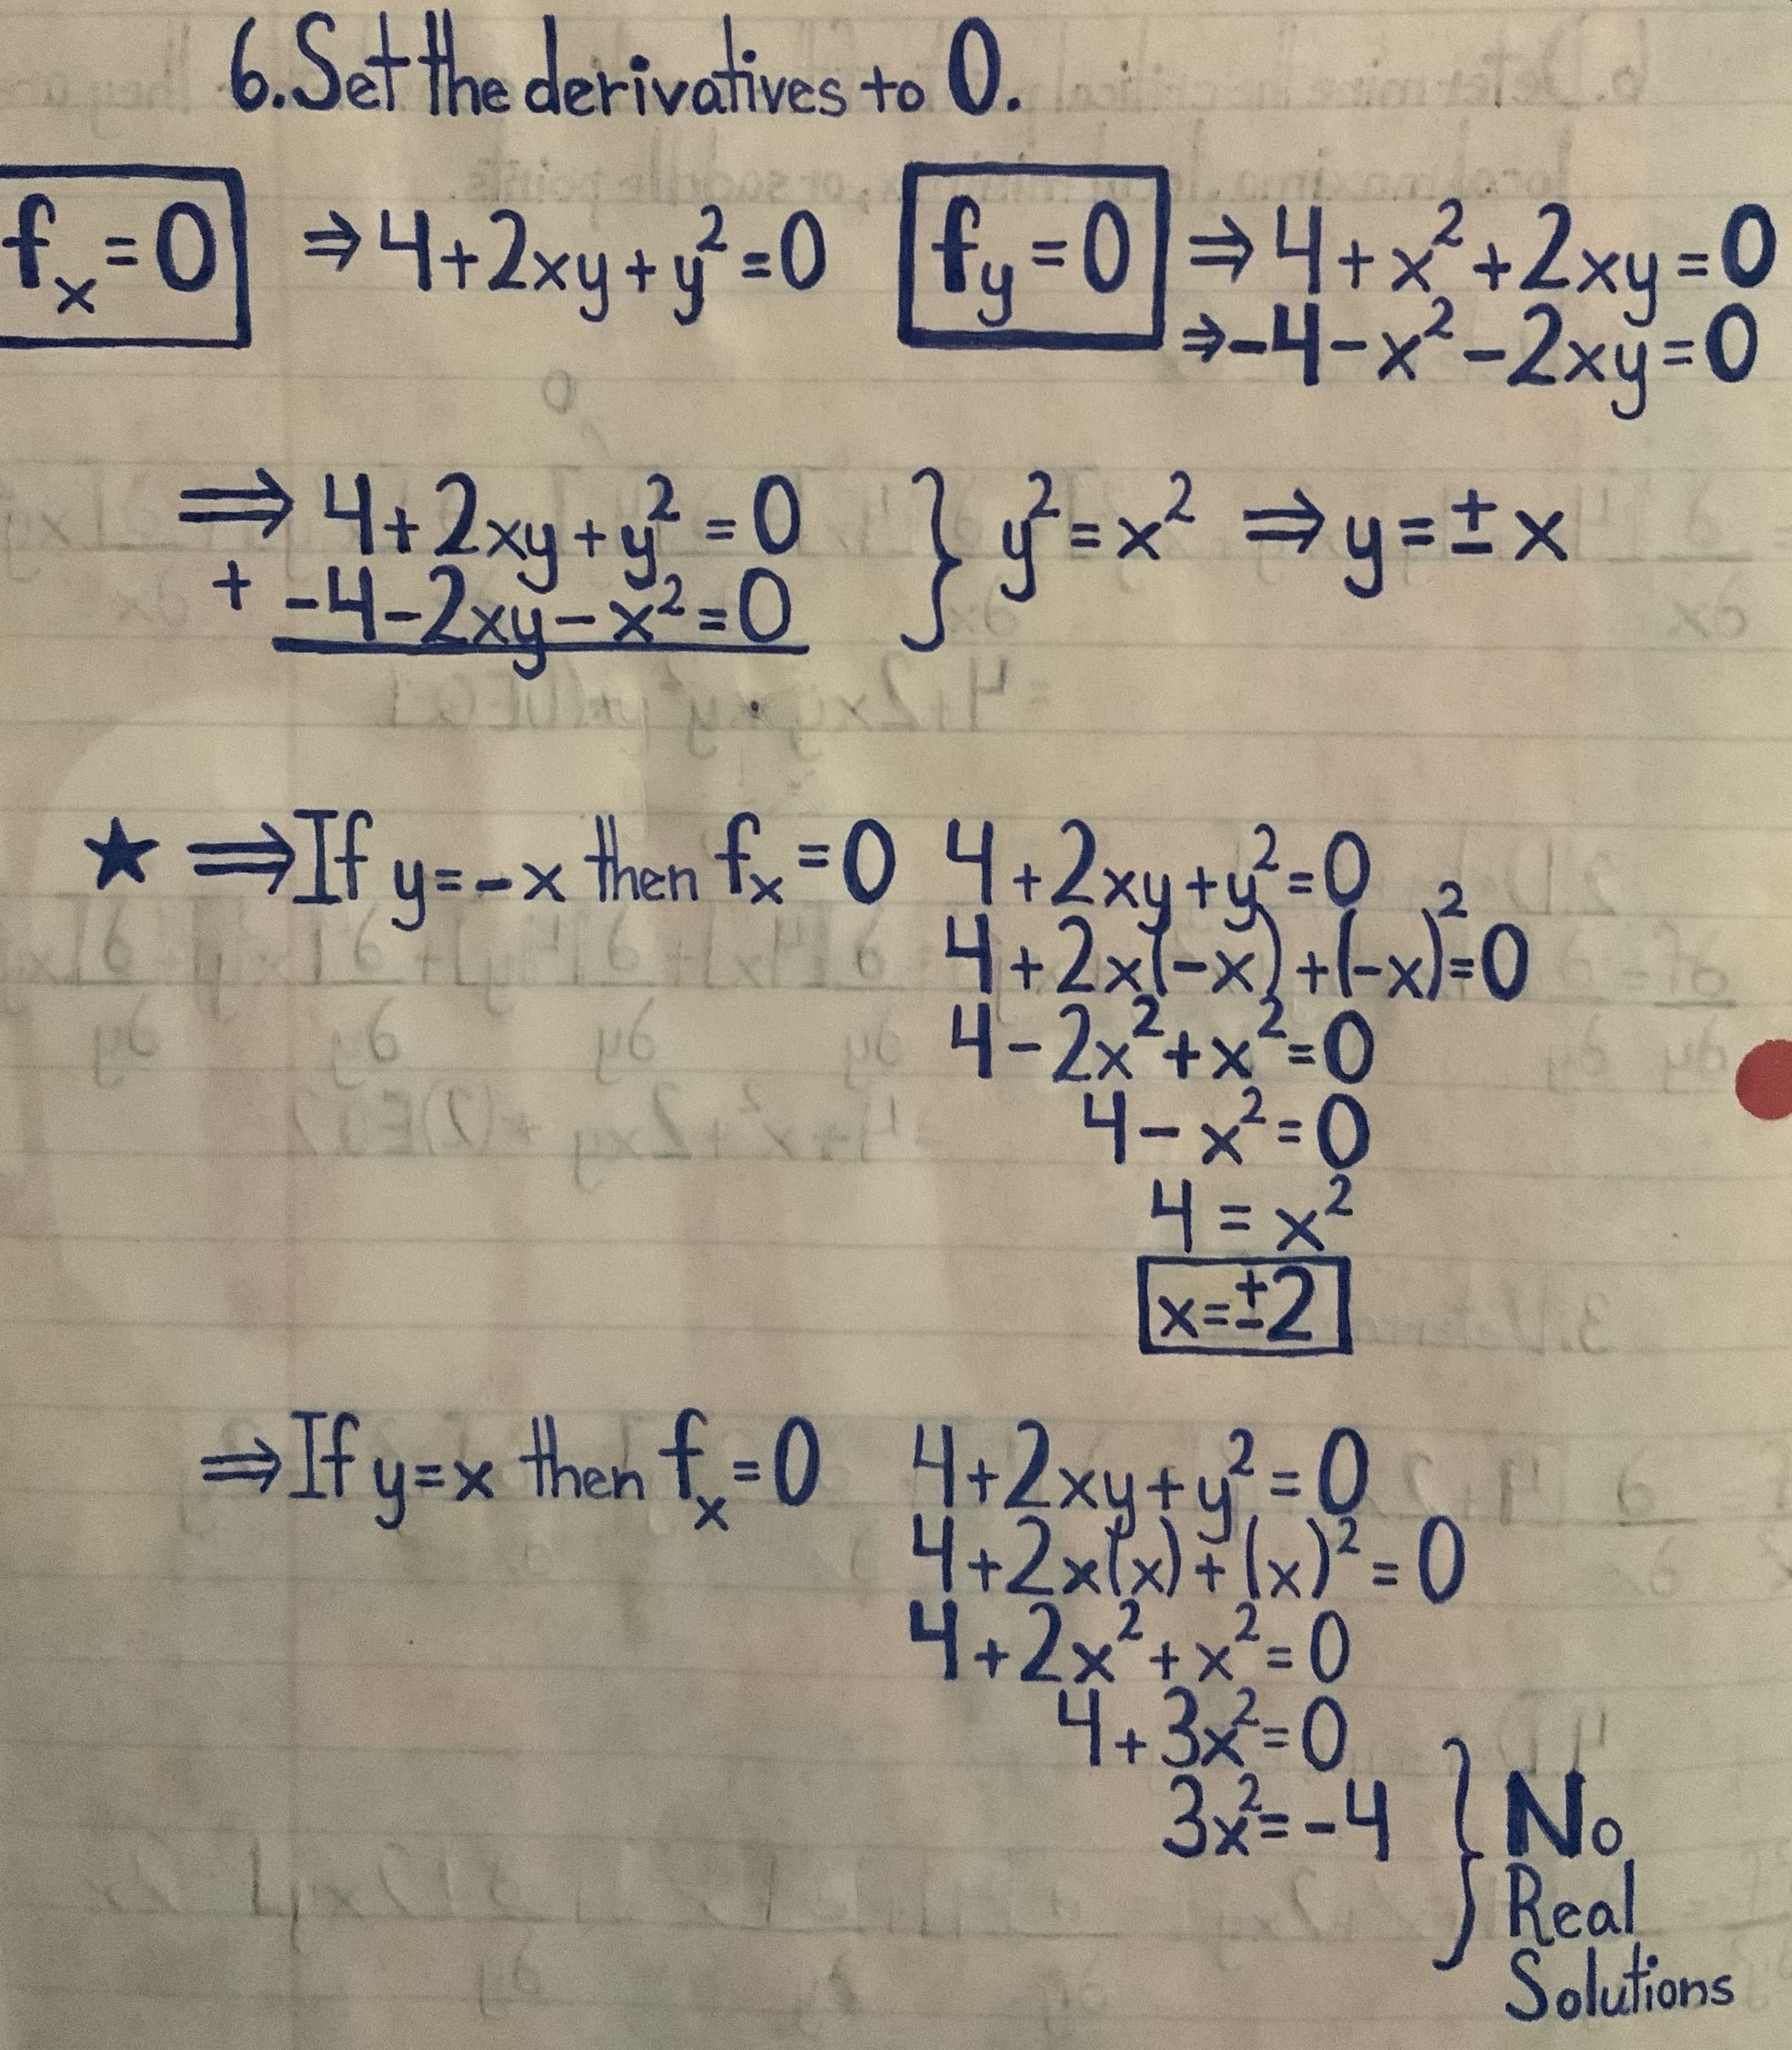 6.Setthe derivatives to 0.
02.10.
24+2xy+
4+x
+2xy3D
→-4-x²-2xy=0
0.
4+2xy+y -0
S=x²=y=±x_
%3D
-4-2xy-x²=0
2-0
तखु नशि
* If y=-x then fx=0 4+2xy+y=Q 2
P164+2x1-x) +l-xl=06
4-2x2+x²-0
xel 니-X=0
H=x²
x=#2] E
2.
→If y=x then f=0 4+2xy+u=Q6
xyty
2=D0
4+2x1xx)²= 0
2-0
4+2x²+x²= 0
4+3x%=D0
3=-4 (No
Real
Solutions
